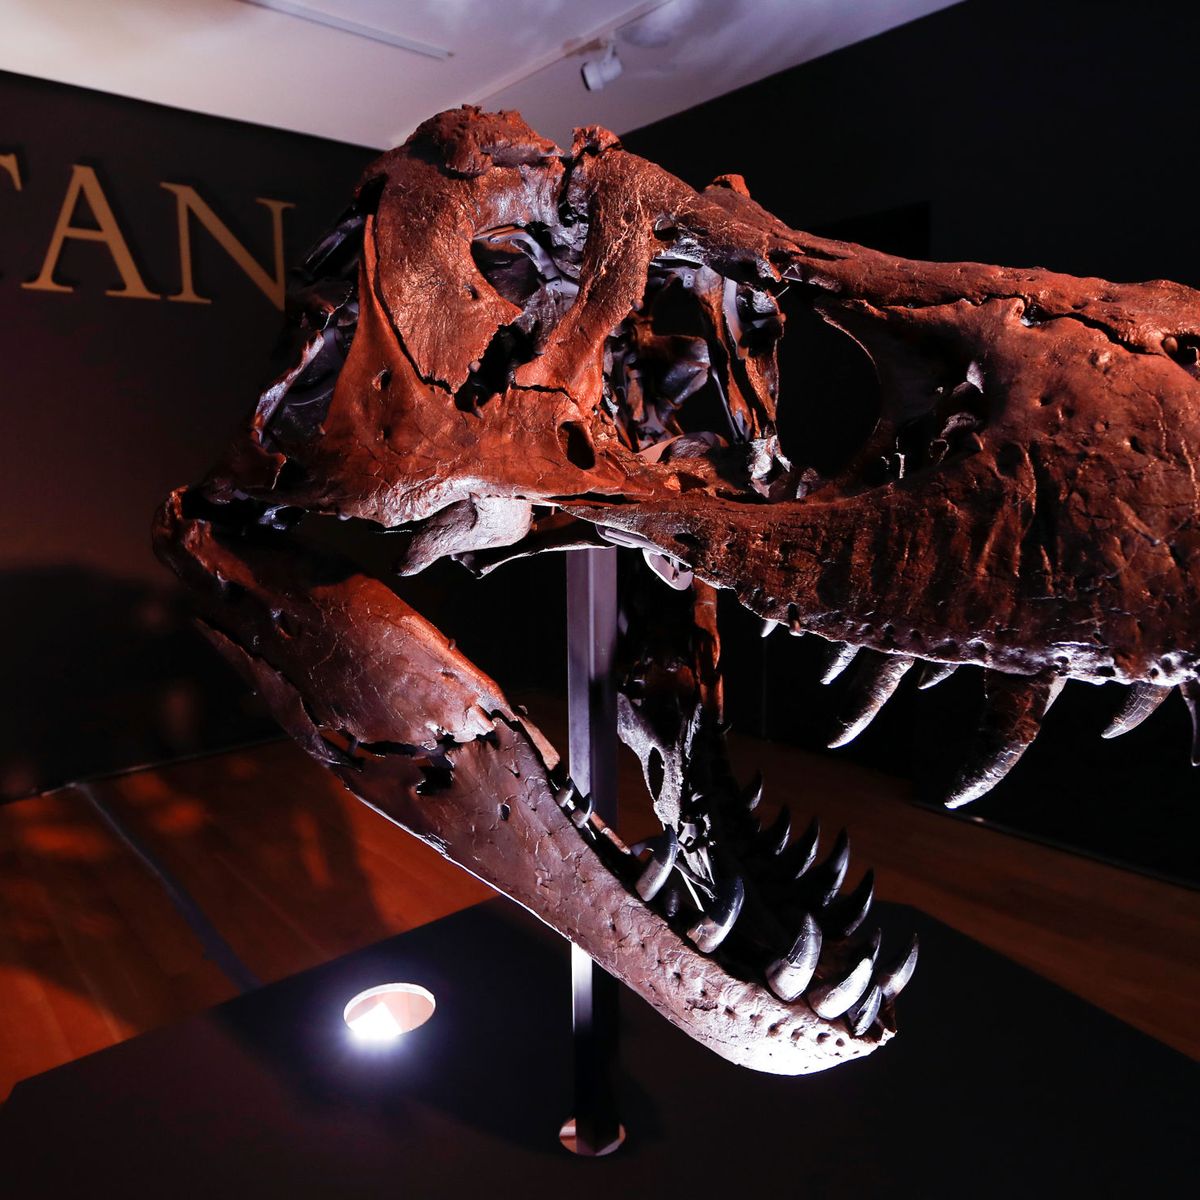 tinción barbilla psicología Un esqueleto completo de Tiranosaurio rex, a subasta